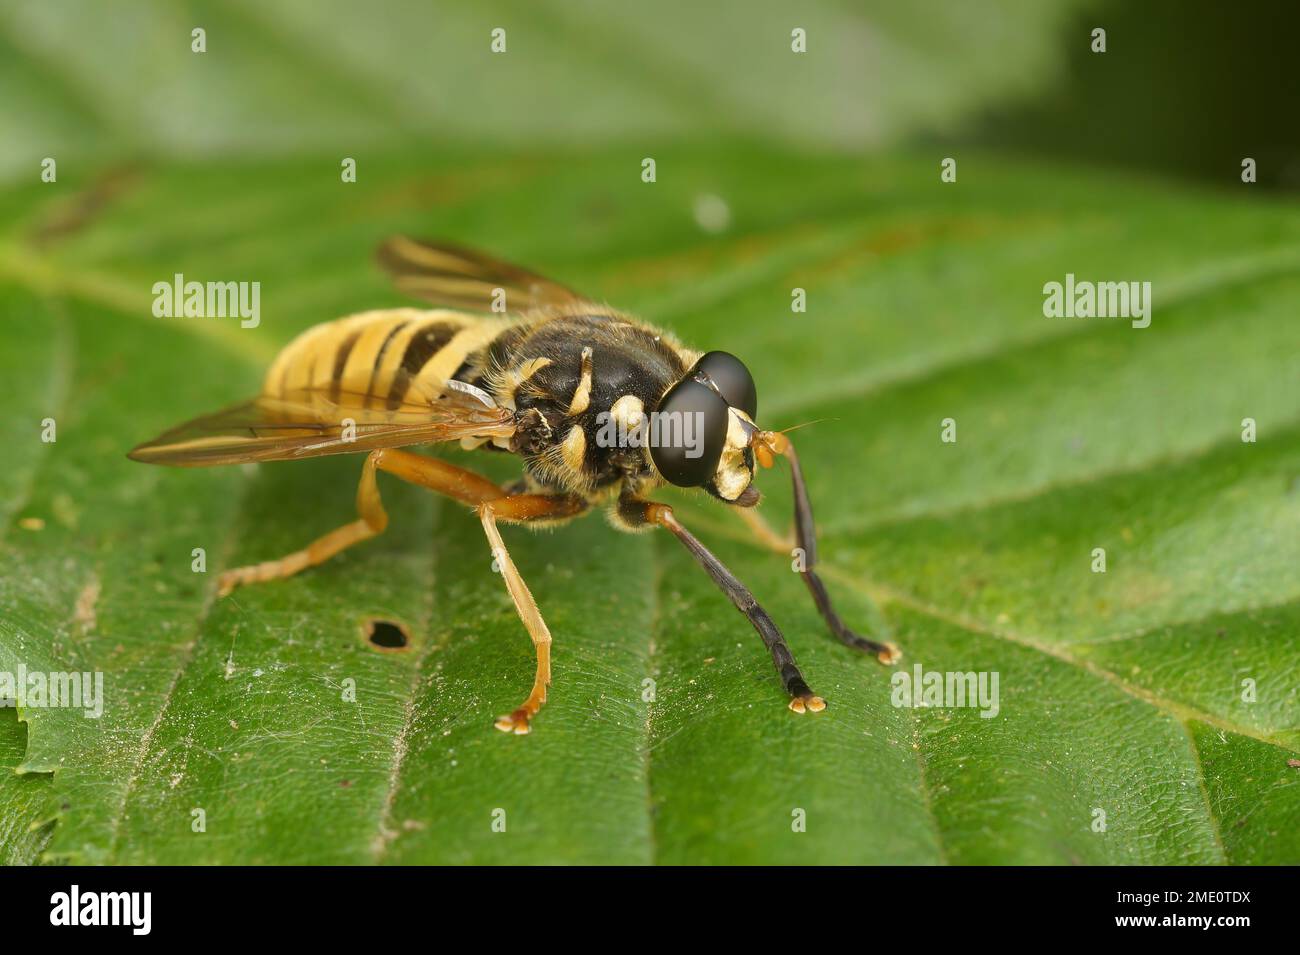 Primo piano naturale su un hoverfly a strisce gialle, Temnostoma vespiforme, cercando di imitare i colori di avvertimento di una vespa, calabrone Foto Stock